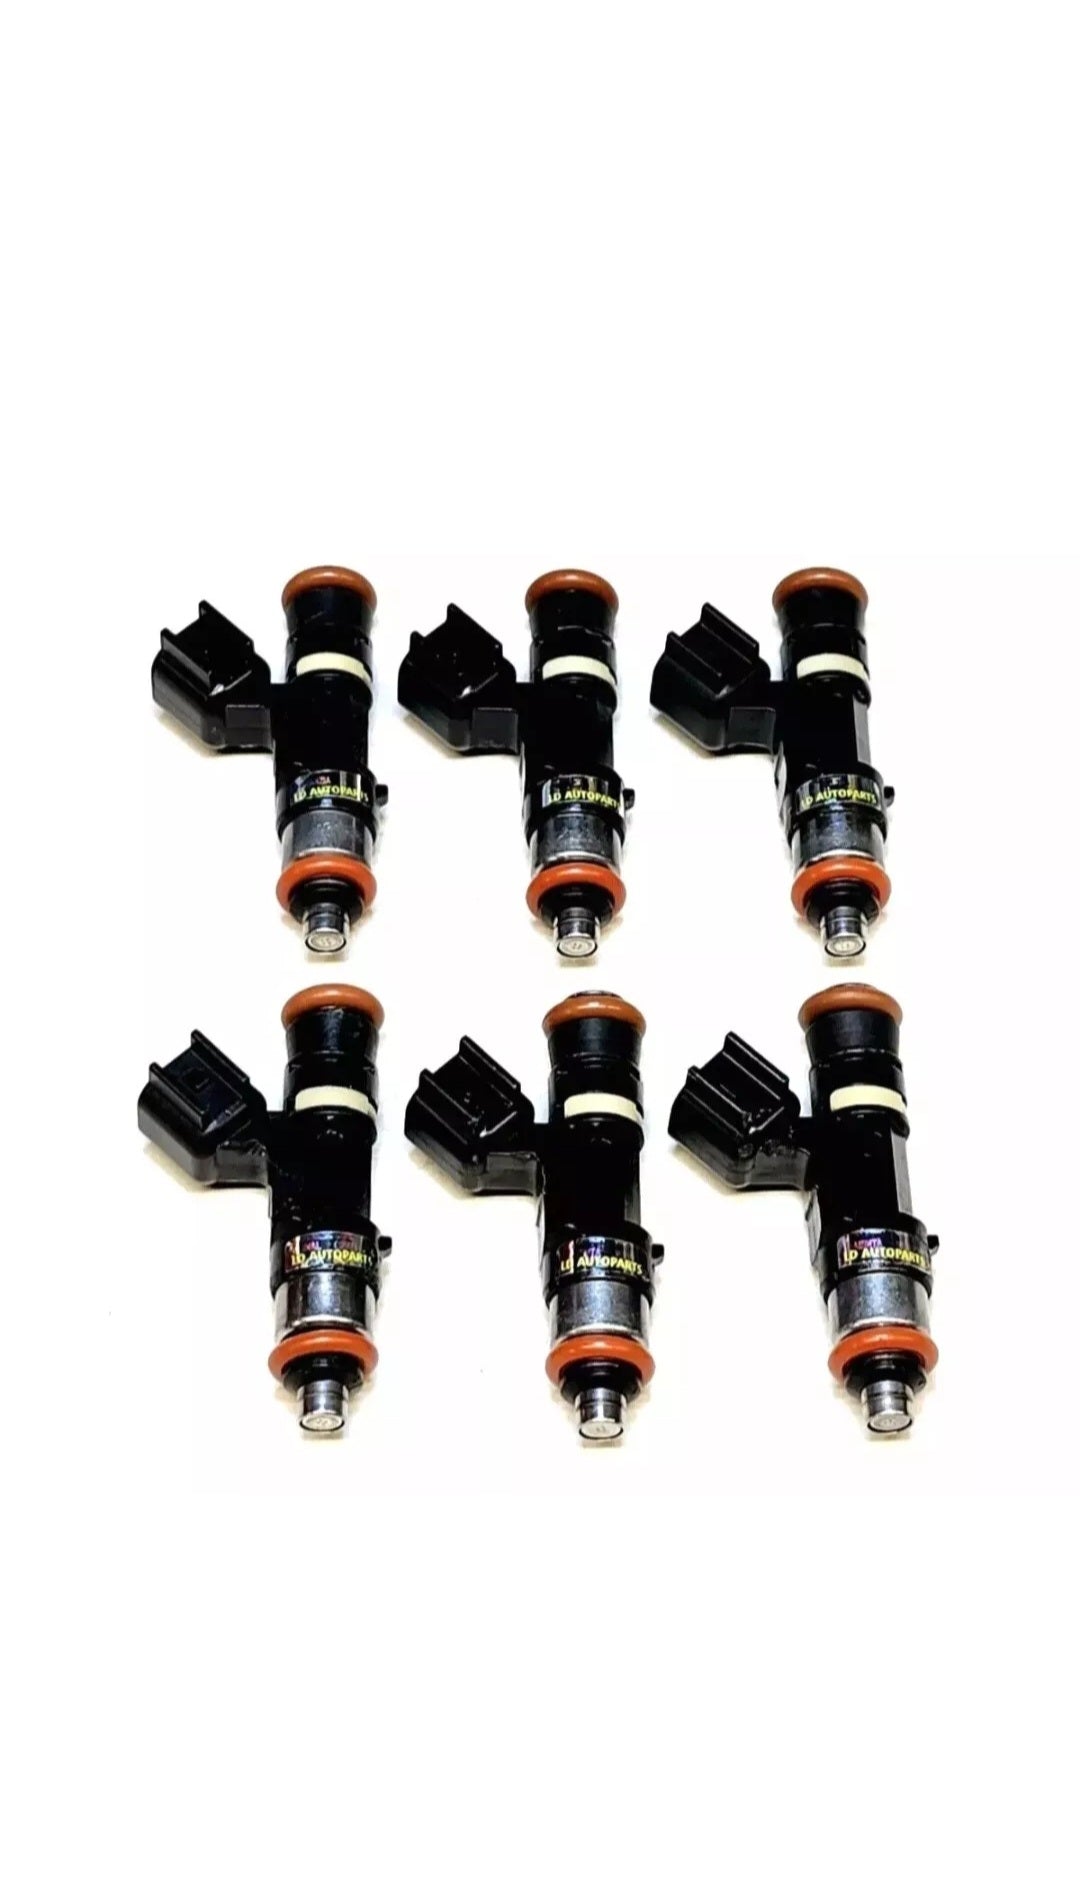 6 Genuine Bosch 0280158056 / 5L2E-D1A / CM-5101 fuel injectors